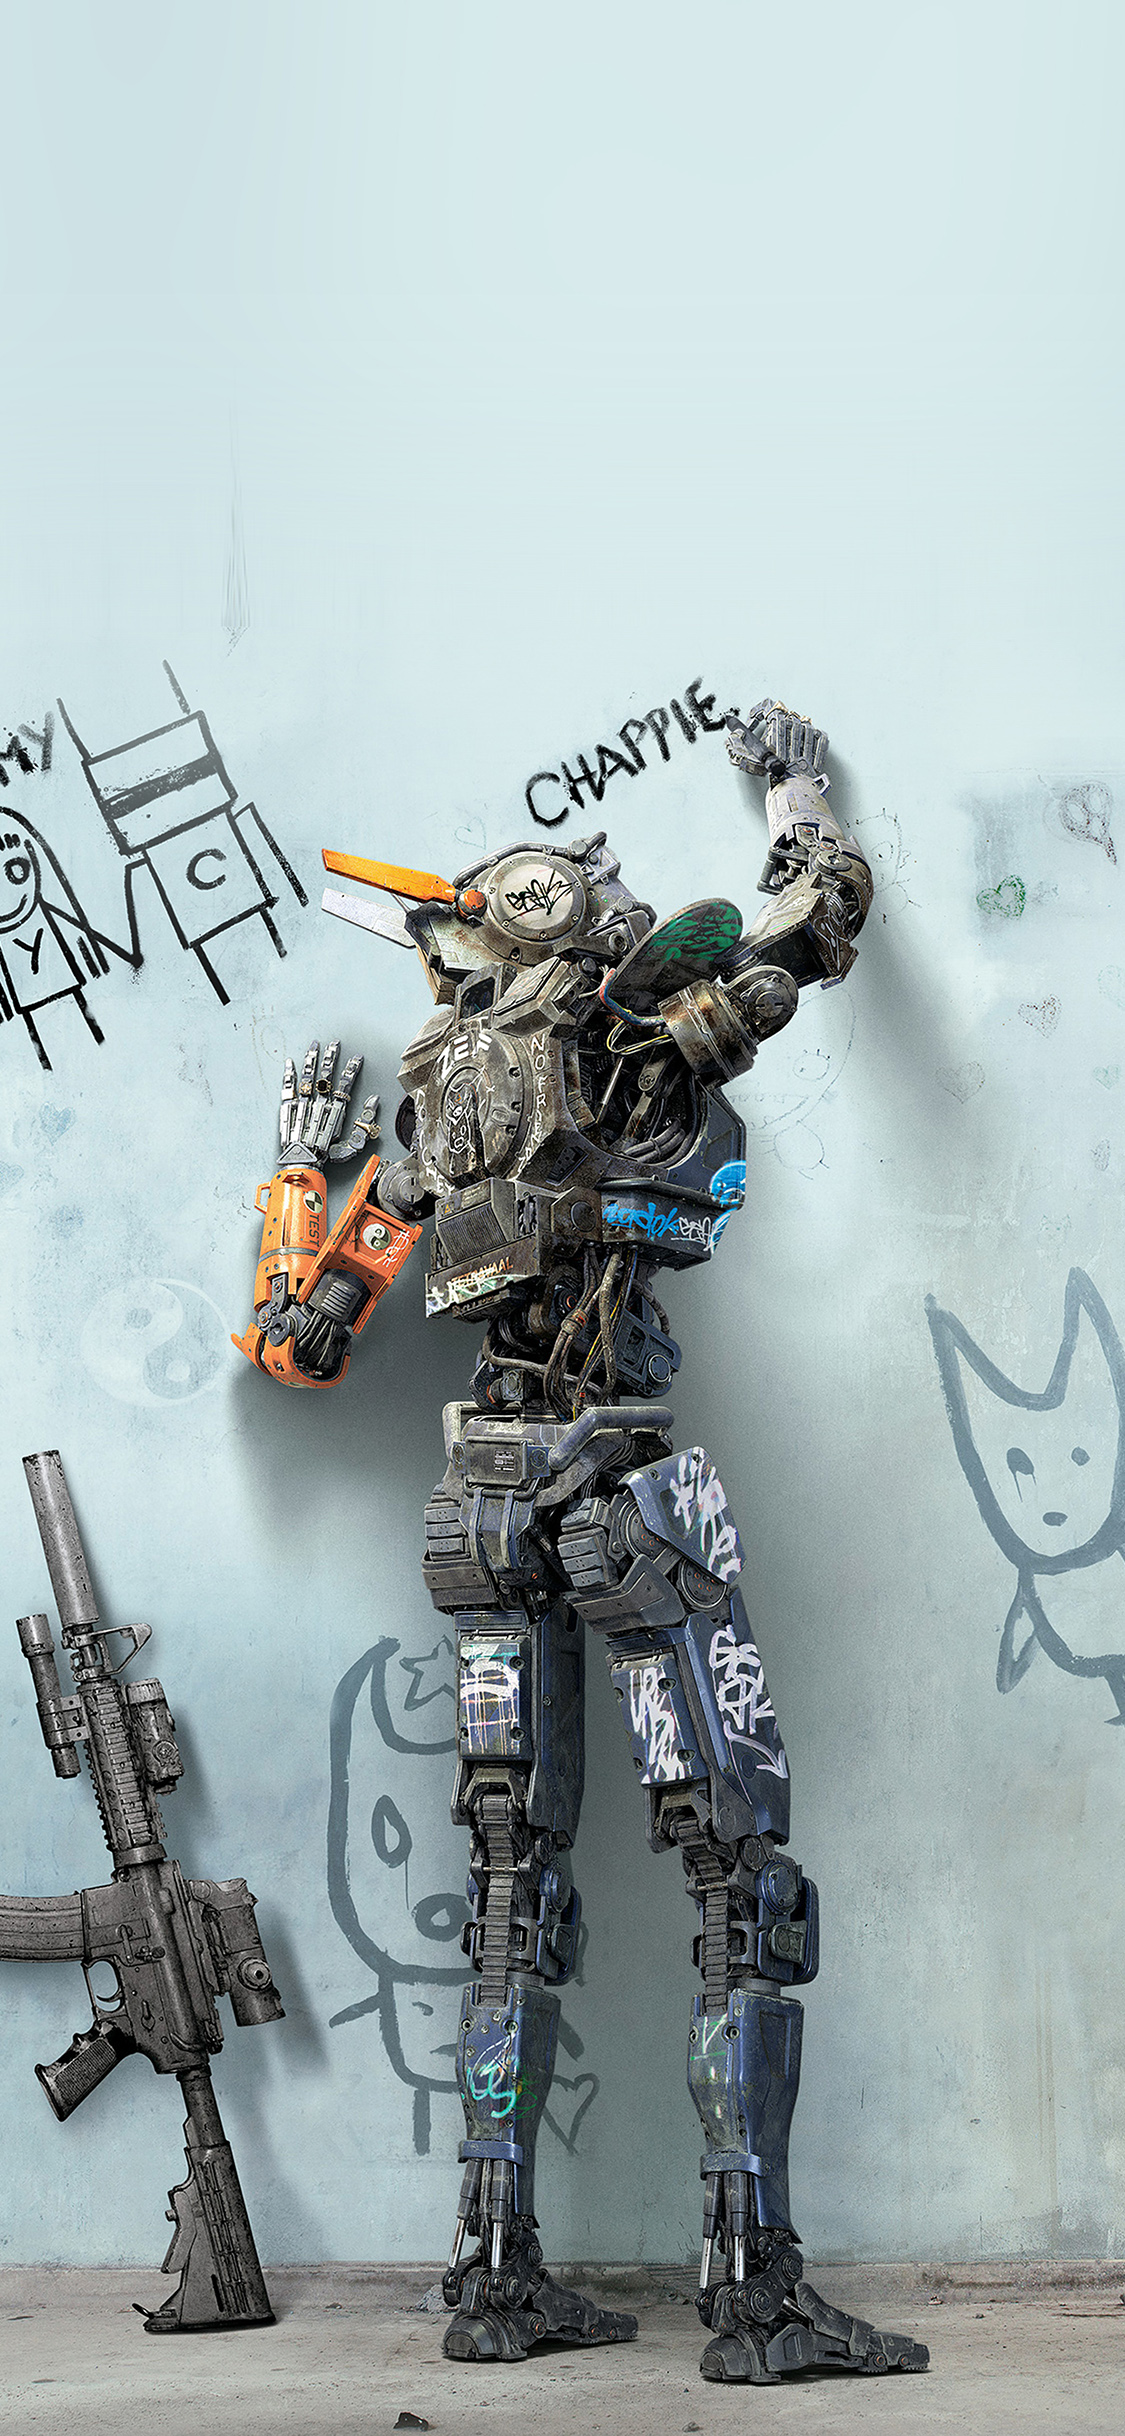 机器人电影“超能查派”机器人主角查派在墙壁写字的手机壁纸